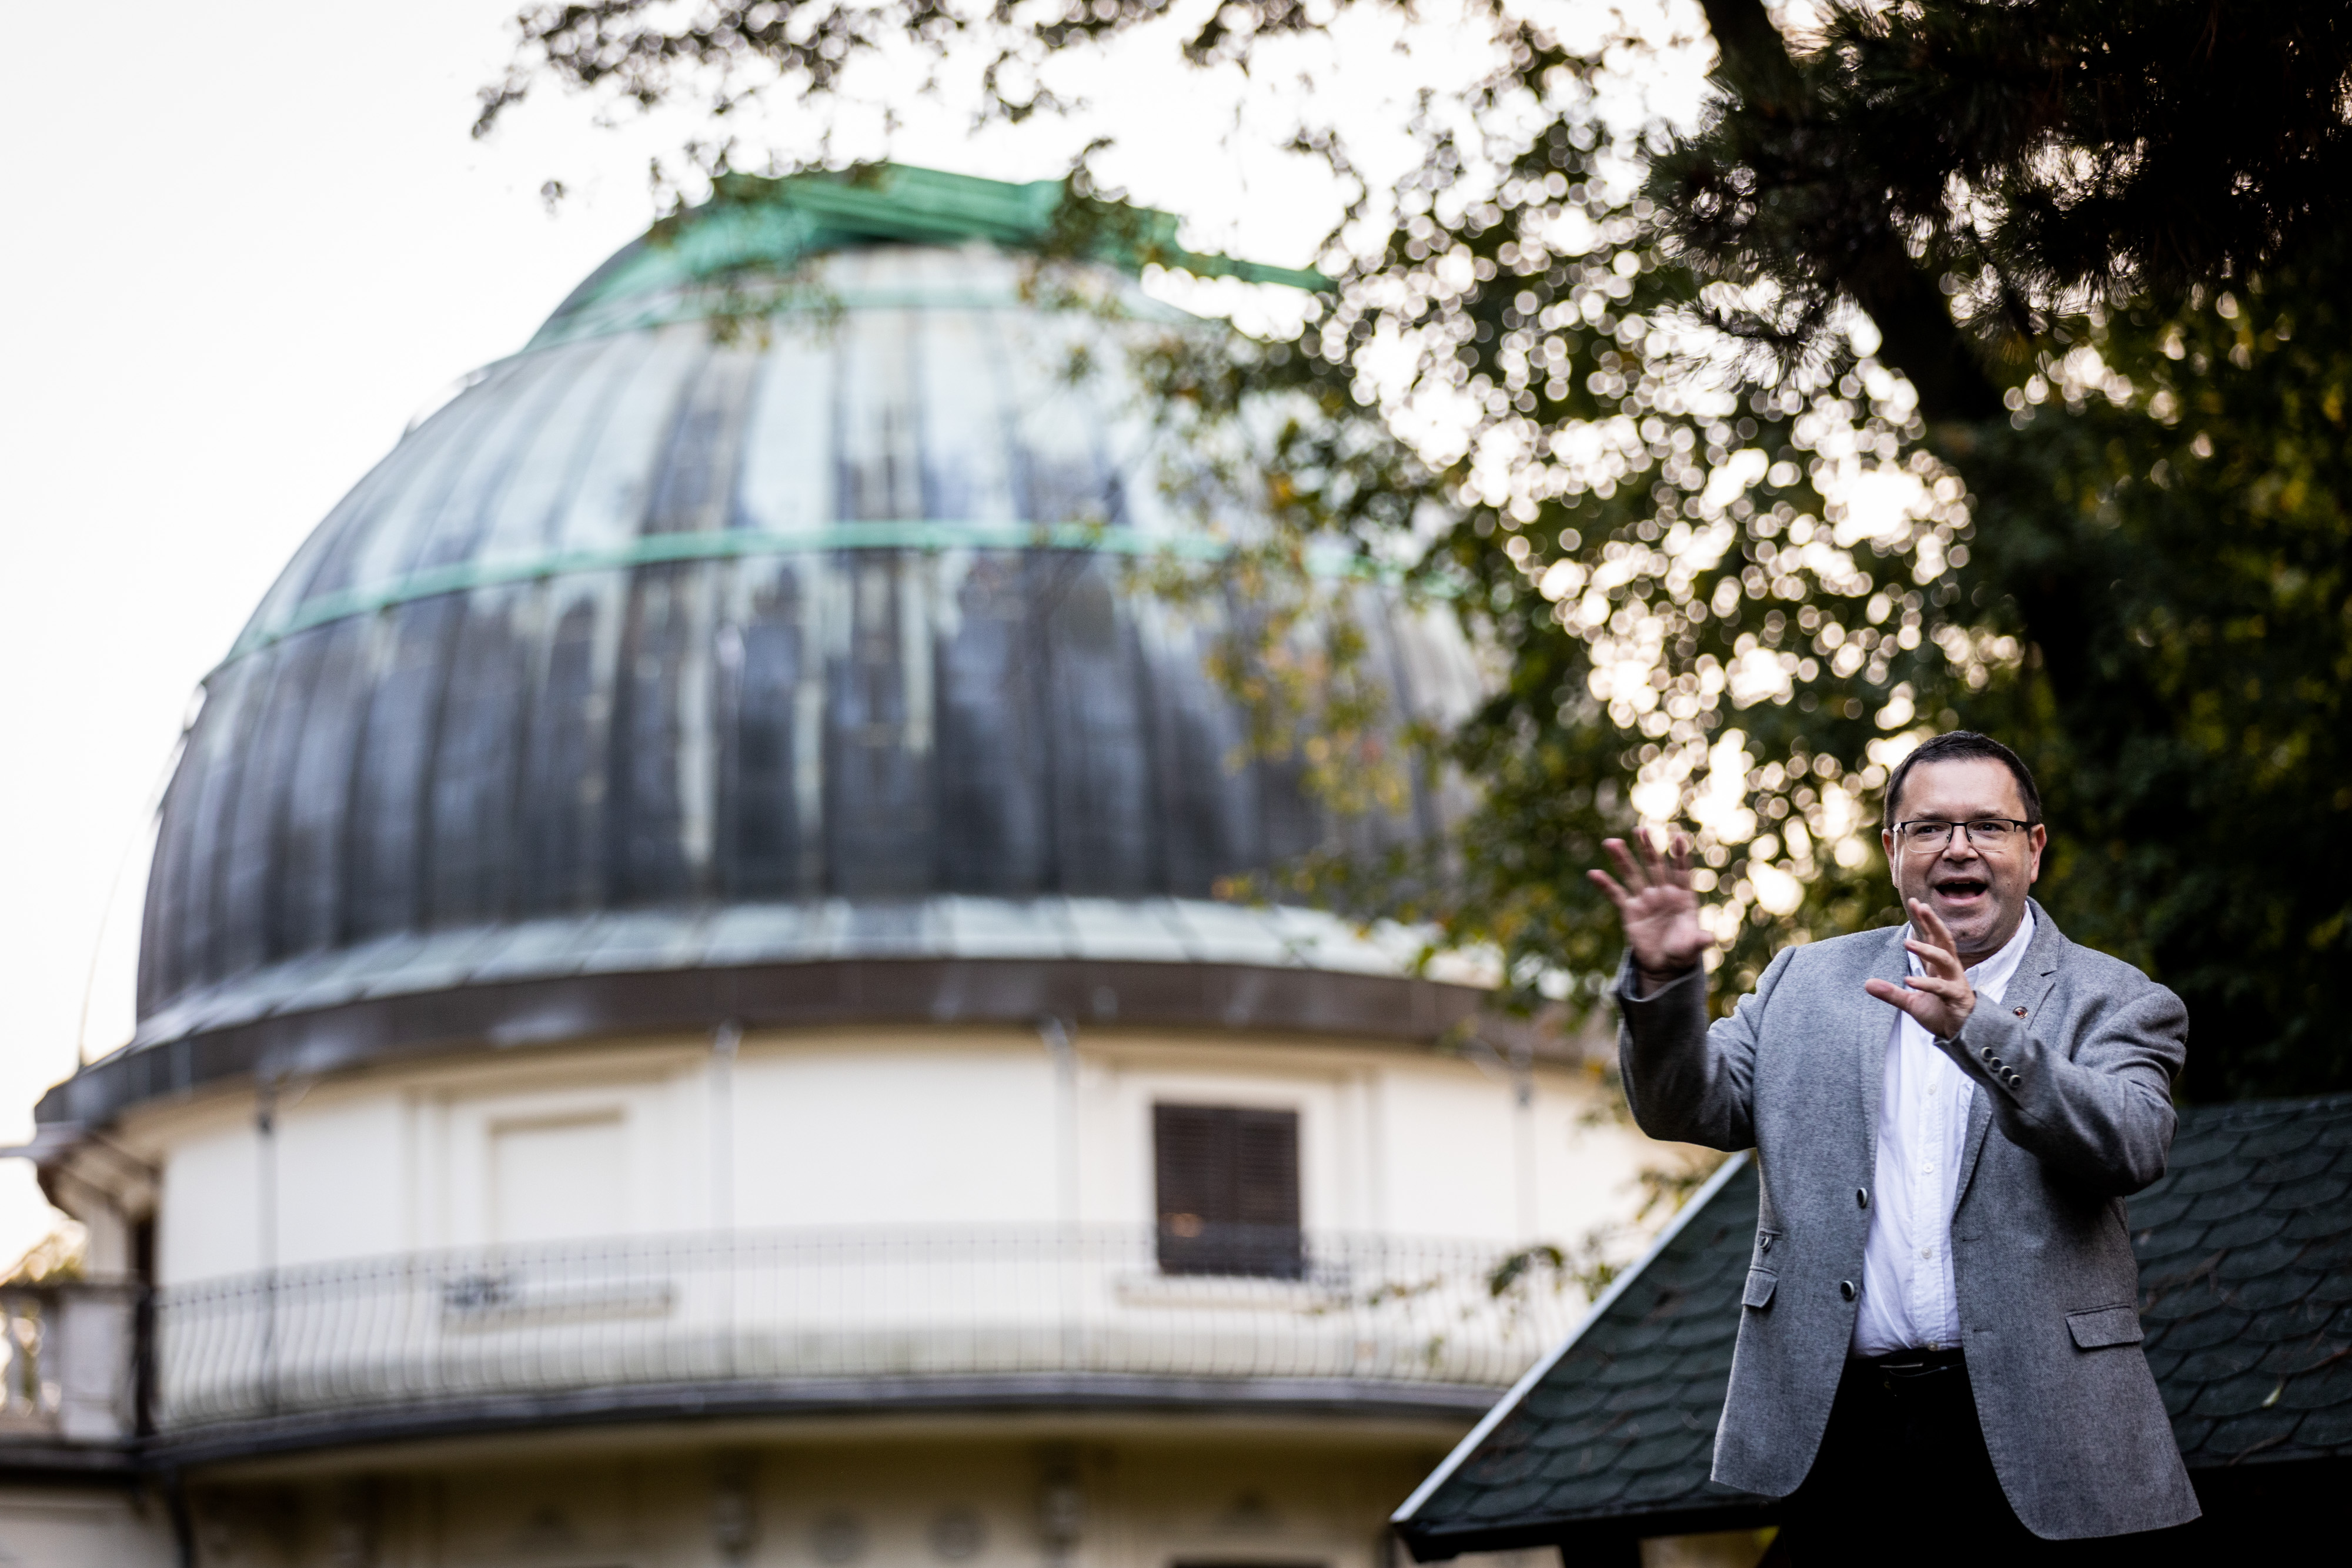 Ha a magyar csillagászokon múlna, övék lenne a legnépszerűbb tudomány